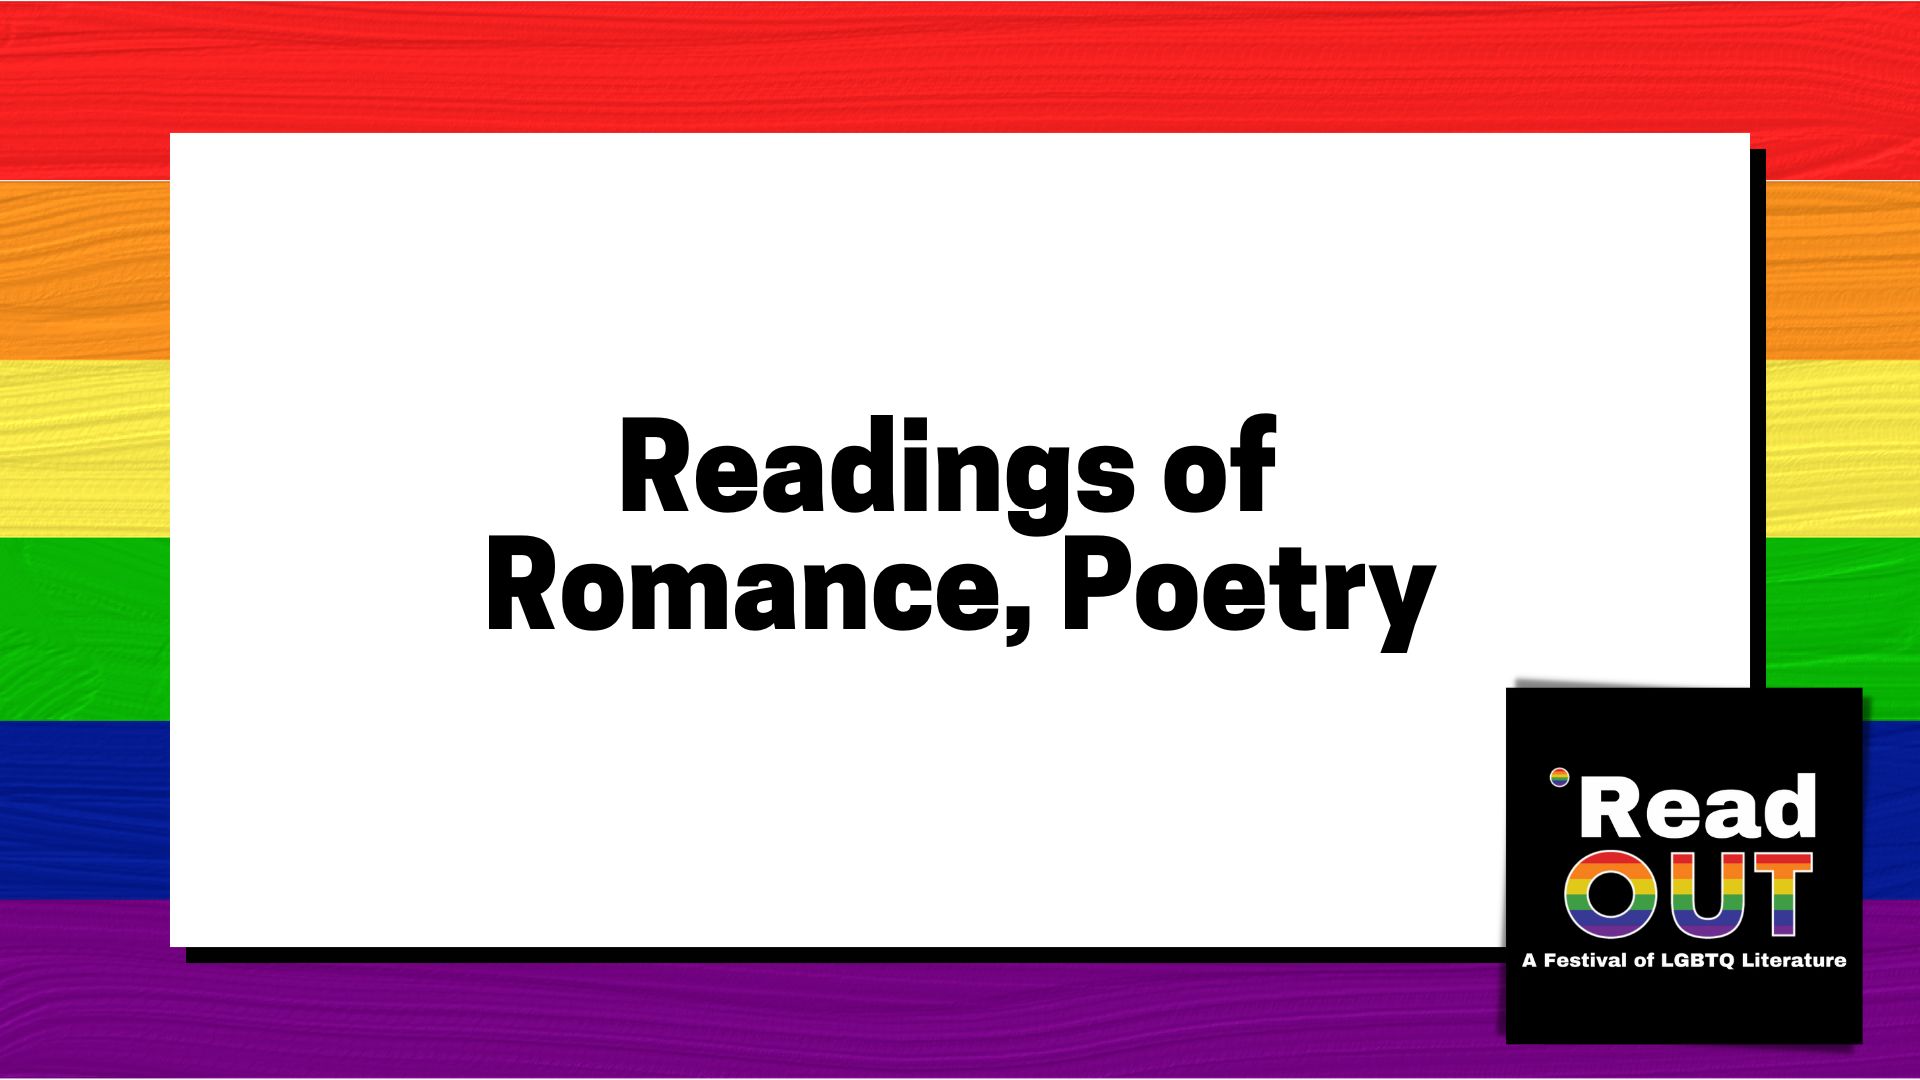 Readings of Romance, Poetry